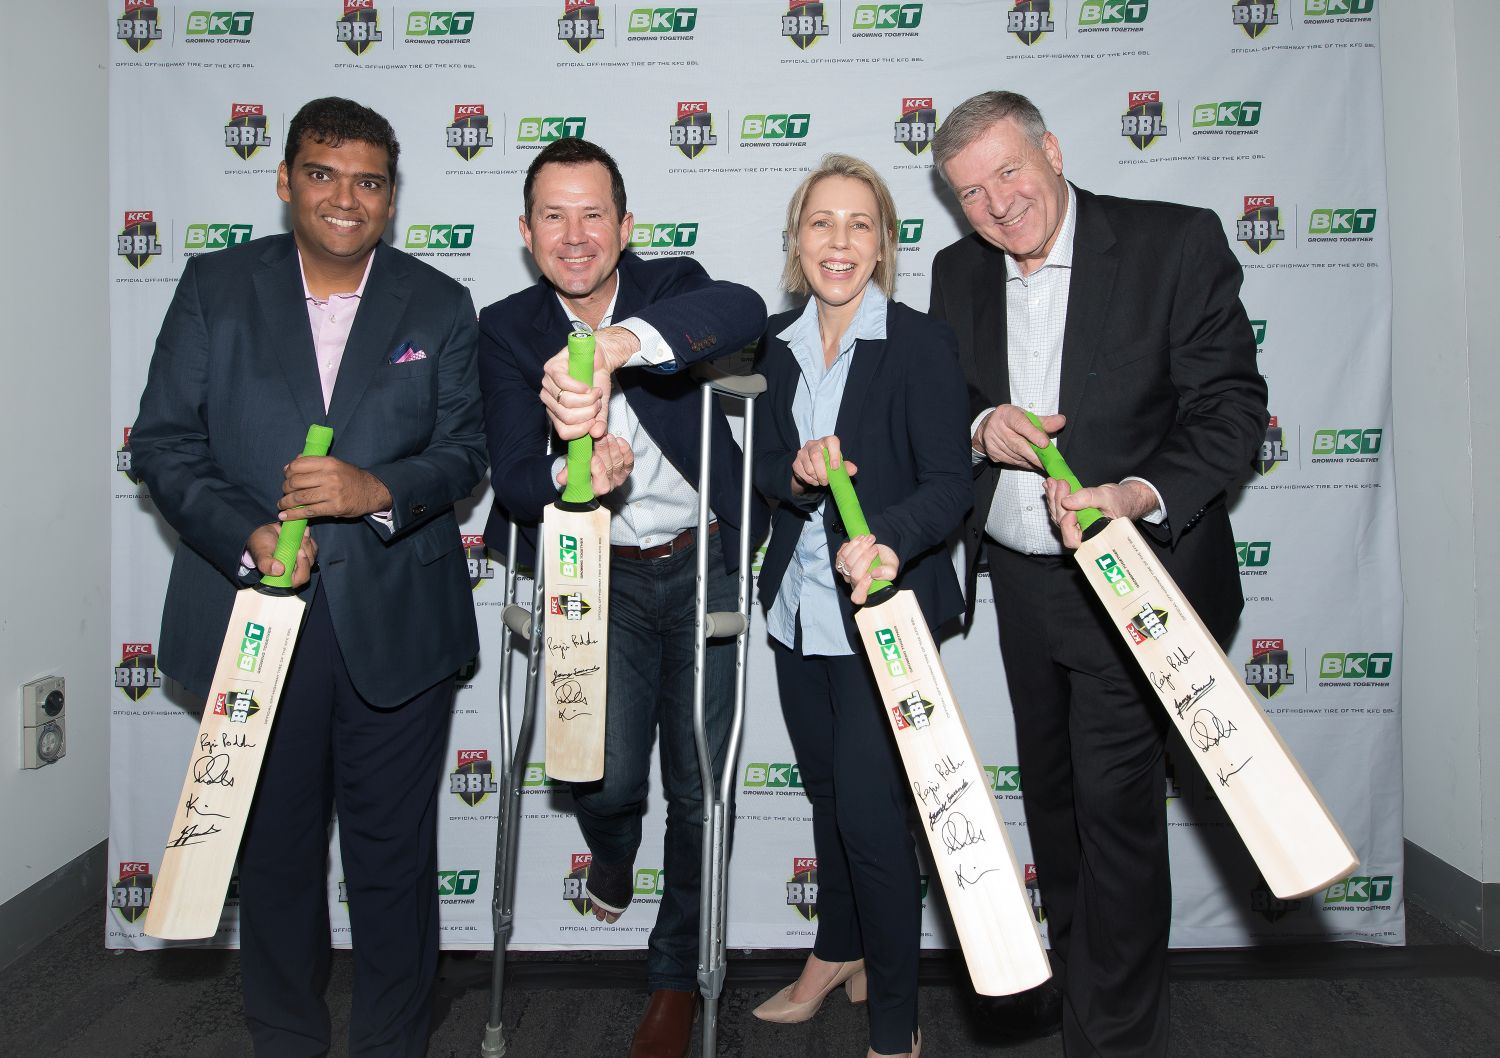 भारतातील बहुराष्ट्रीय समूह बीकेटी व क्रिकेट ऑस्ट्रेलियाचे केएफसी बीबीएल यांच्यामध्ये 2018-2021 या तीन वर्षांच्या कालावधीसाठी भागीदारी करार